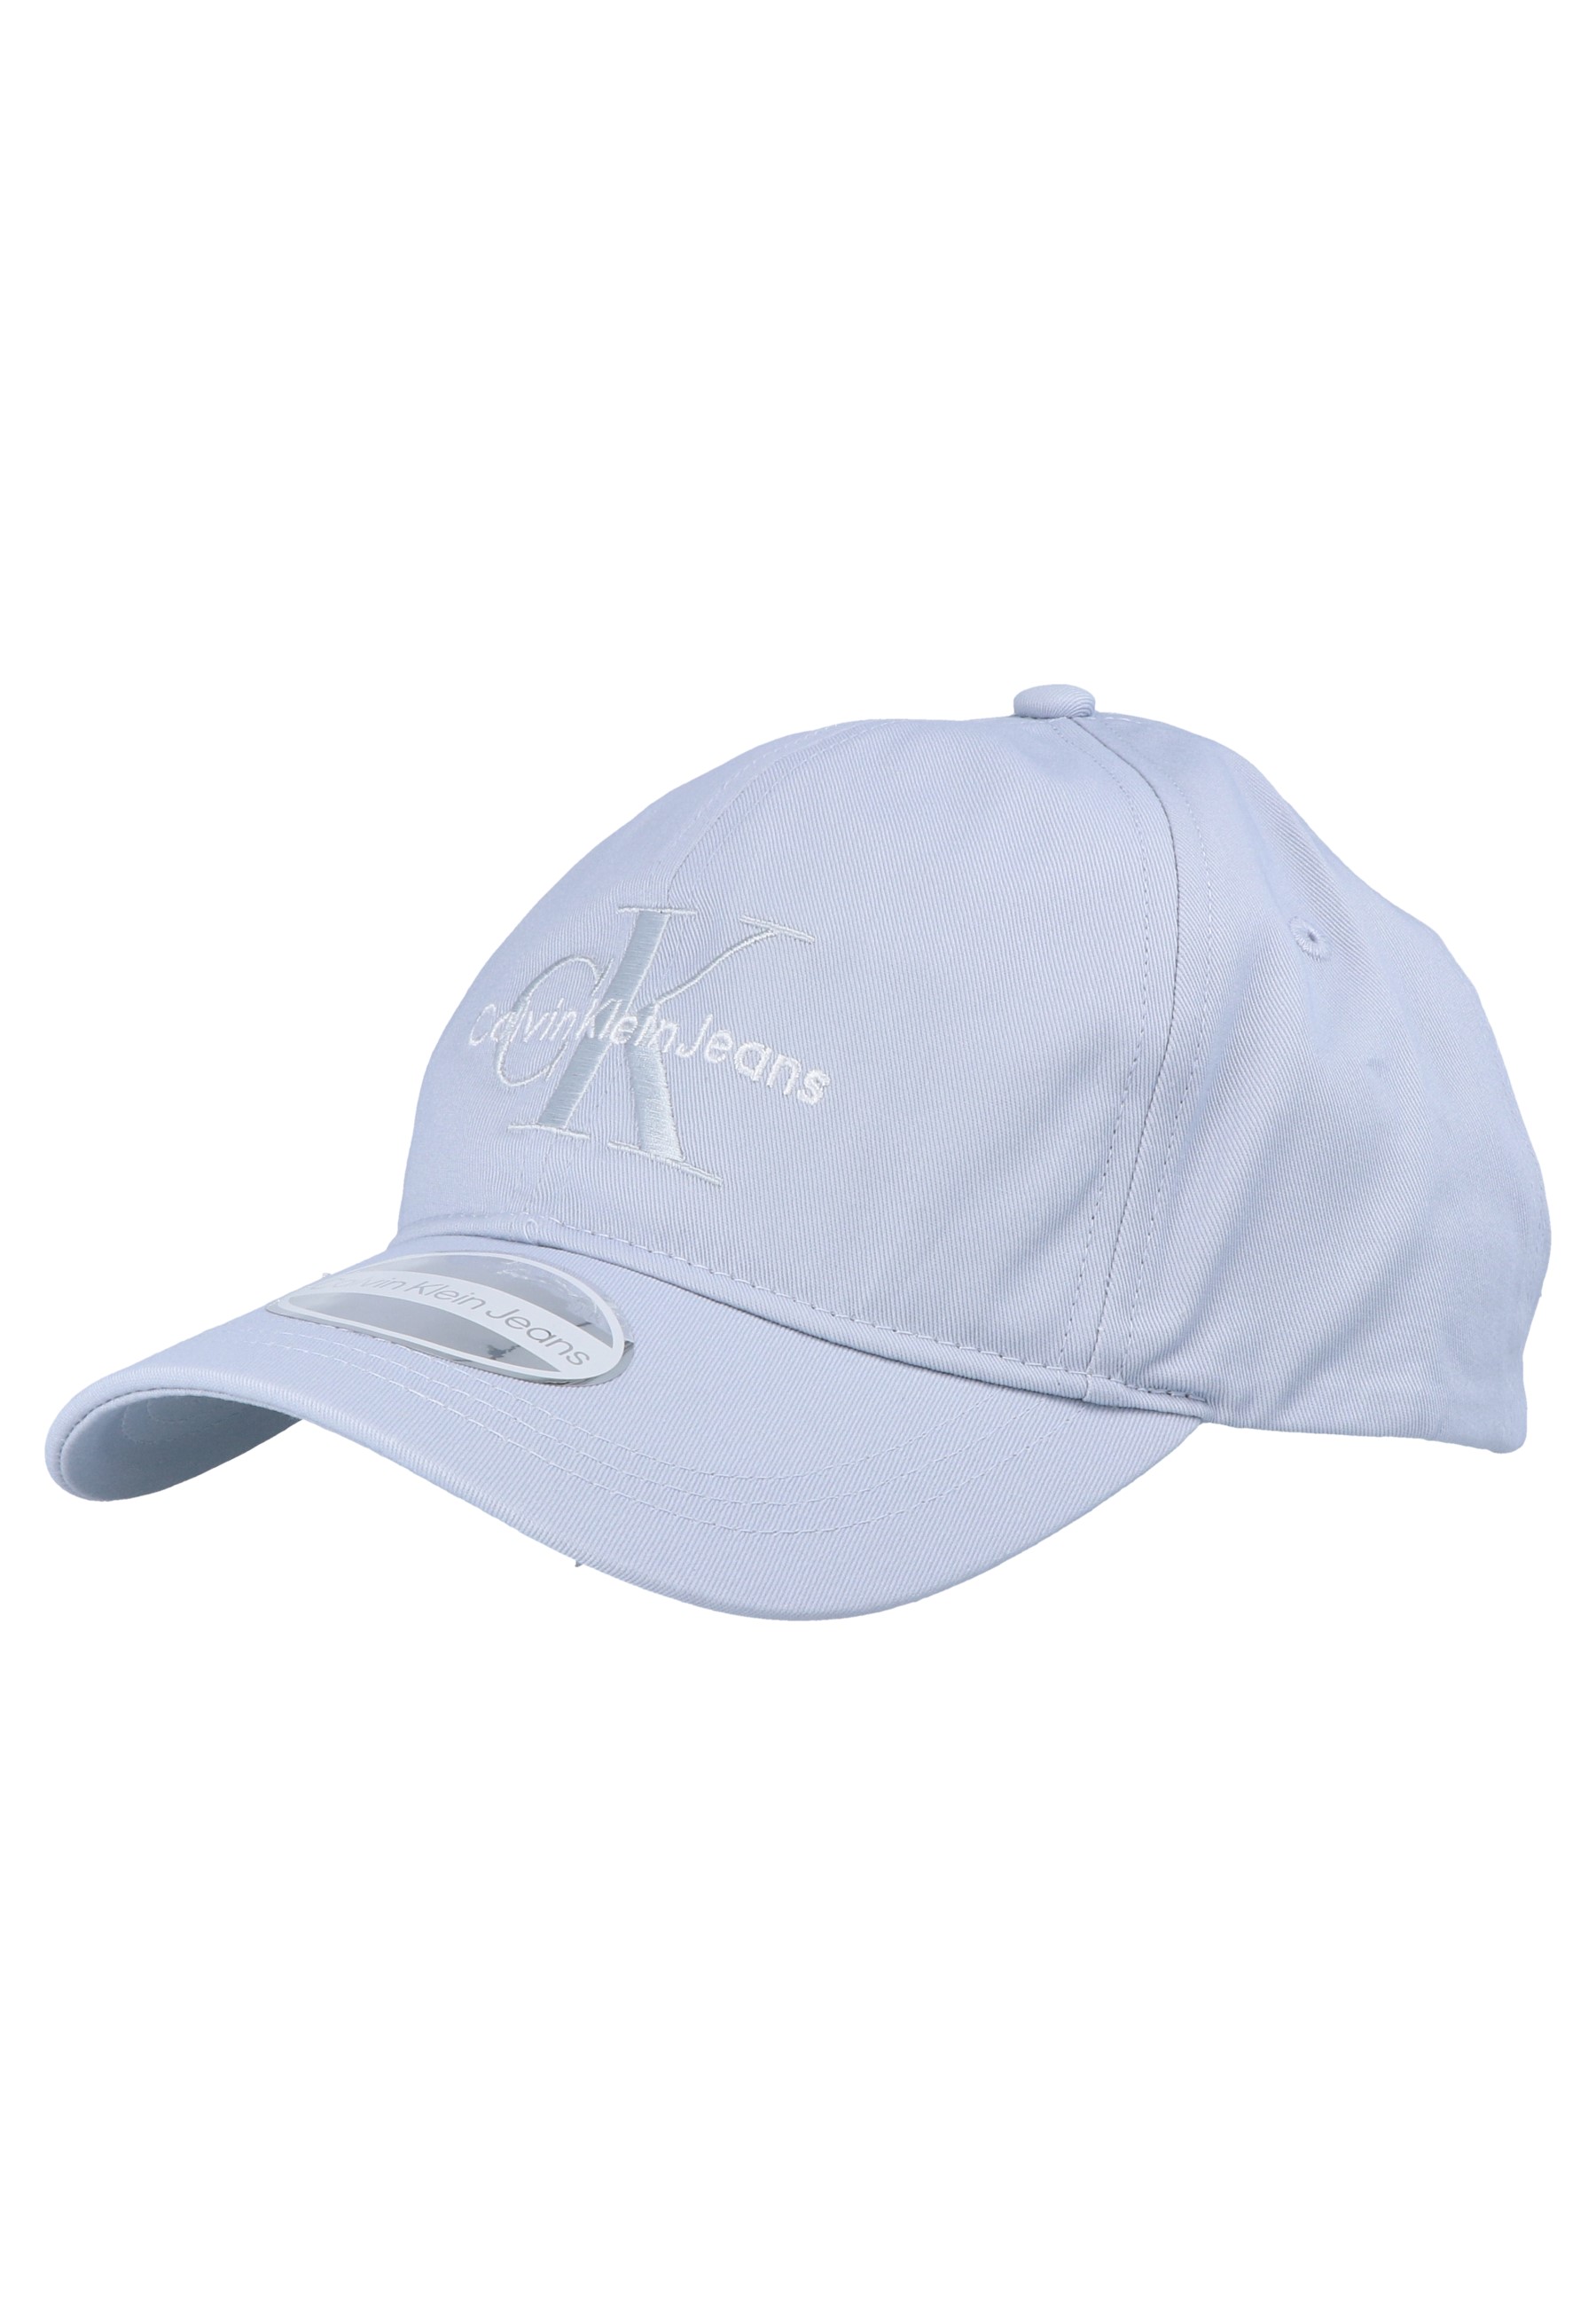 MONOGRAM CAP - Cap